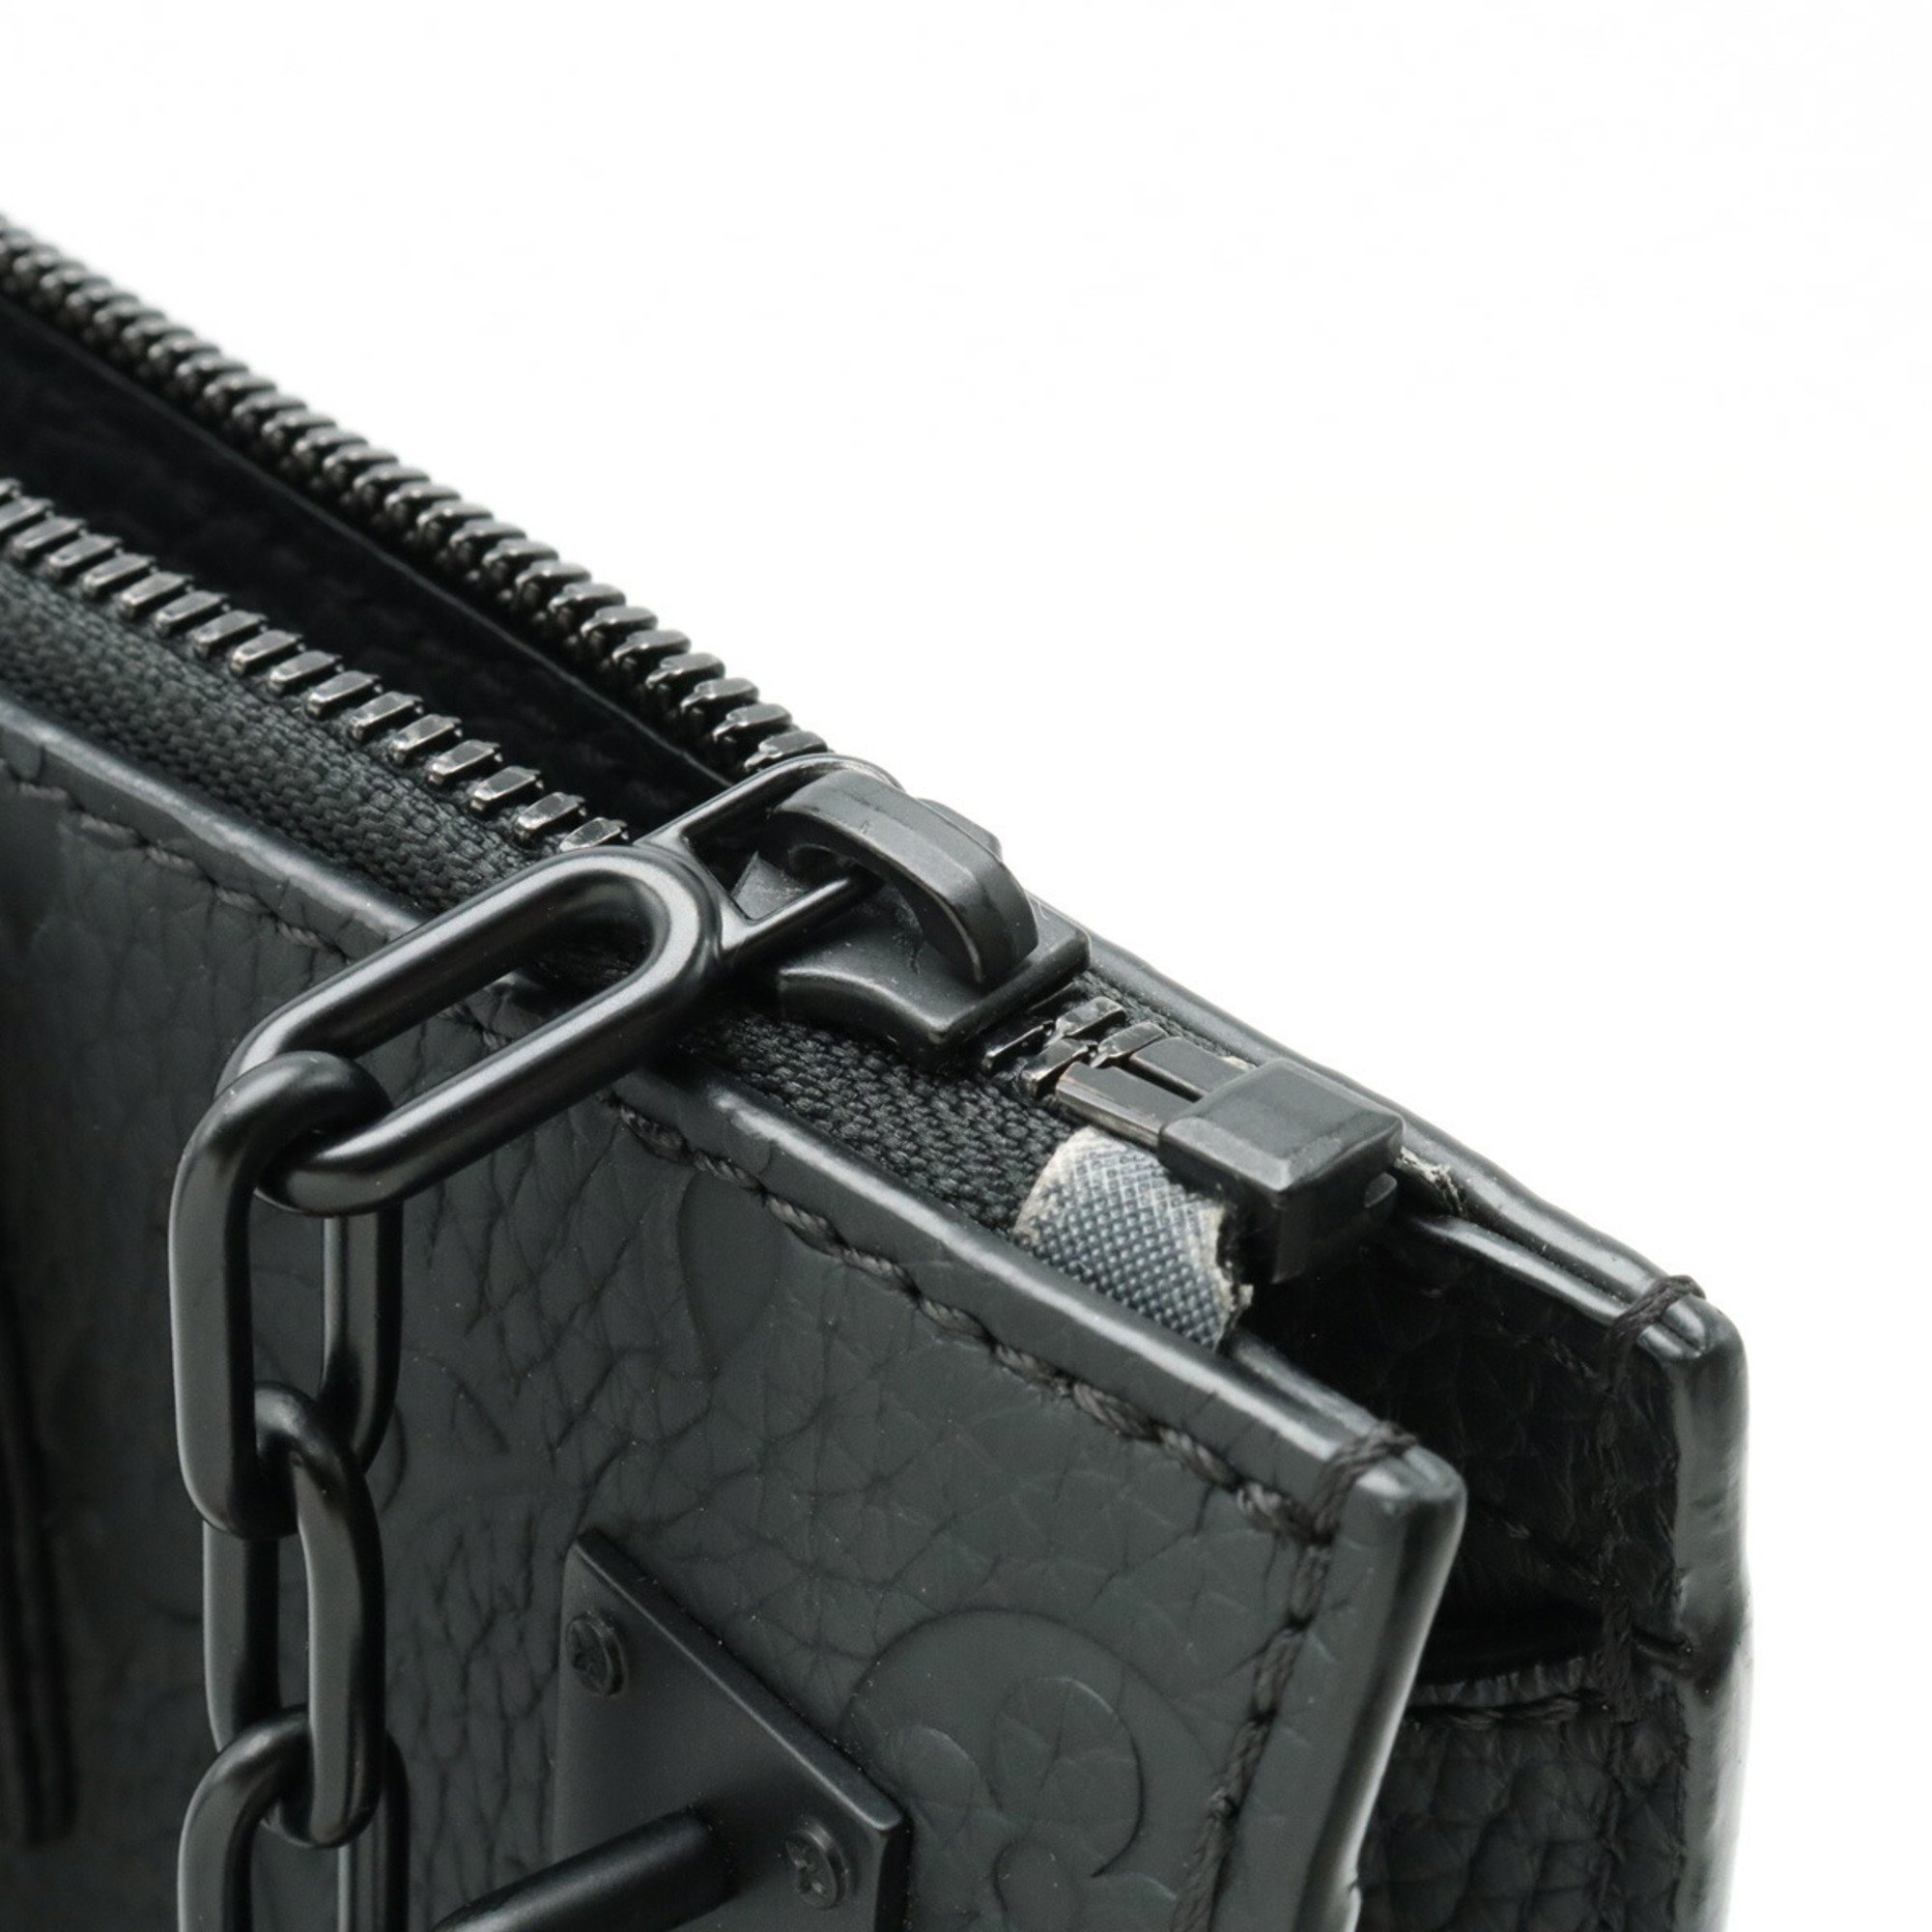 LOUIS VUITTON Monogram Taurillon Sac Pla Tote Bag Shoulder Noir Black M55924